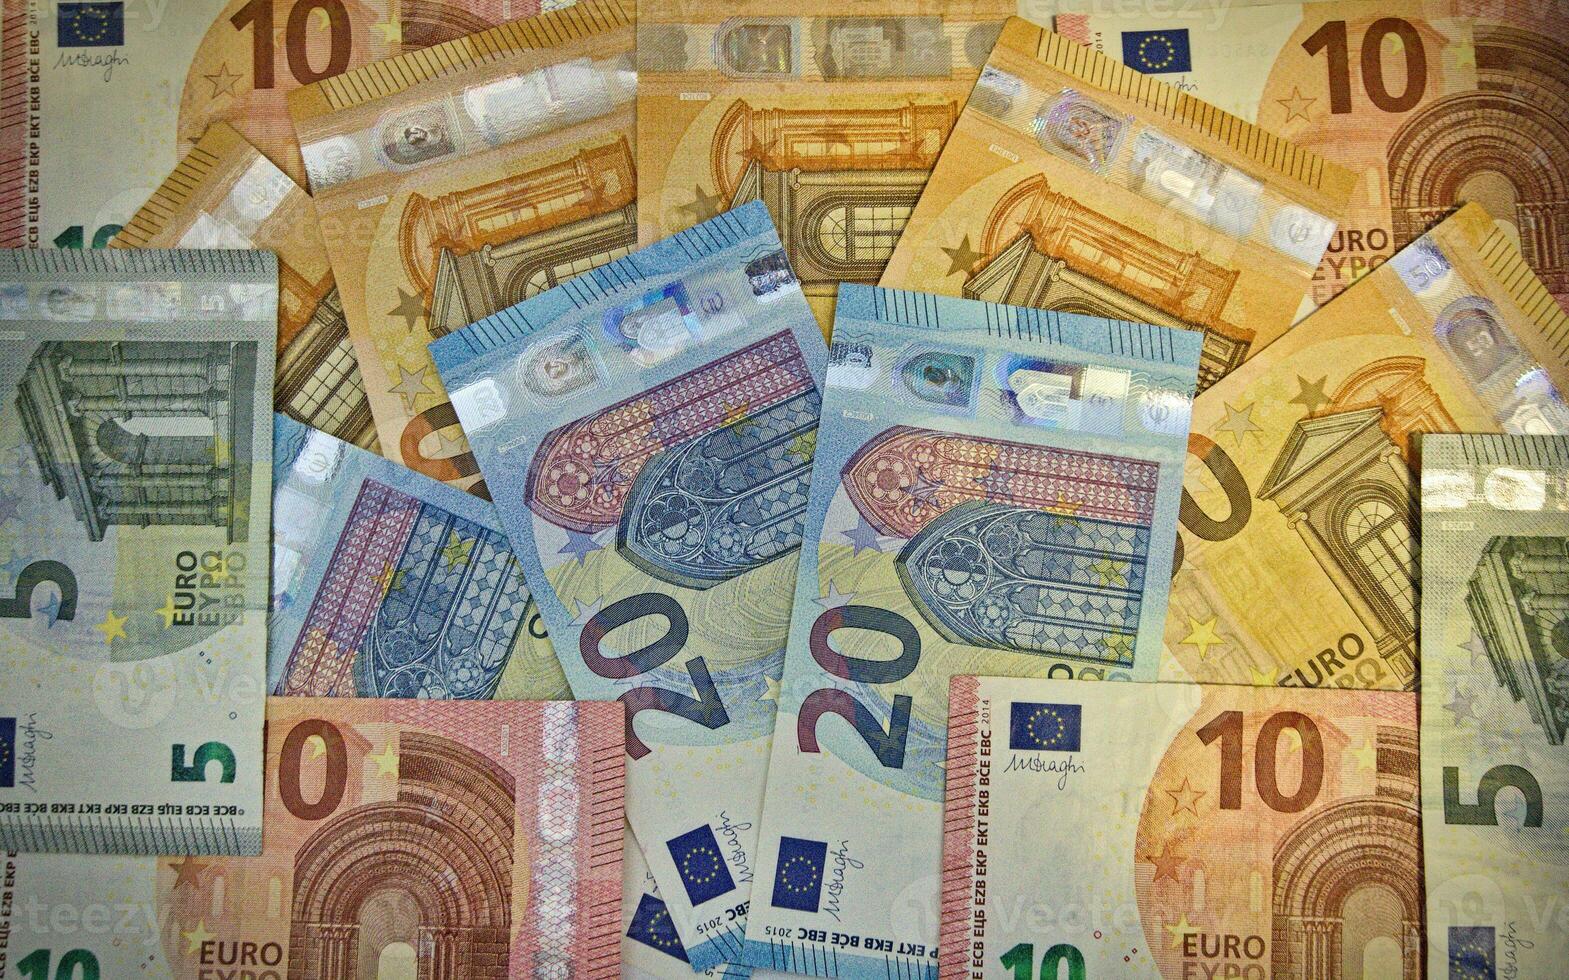 Various Euro banknotes displayed photo